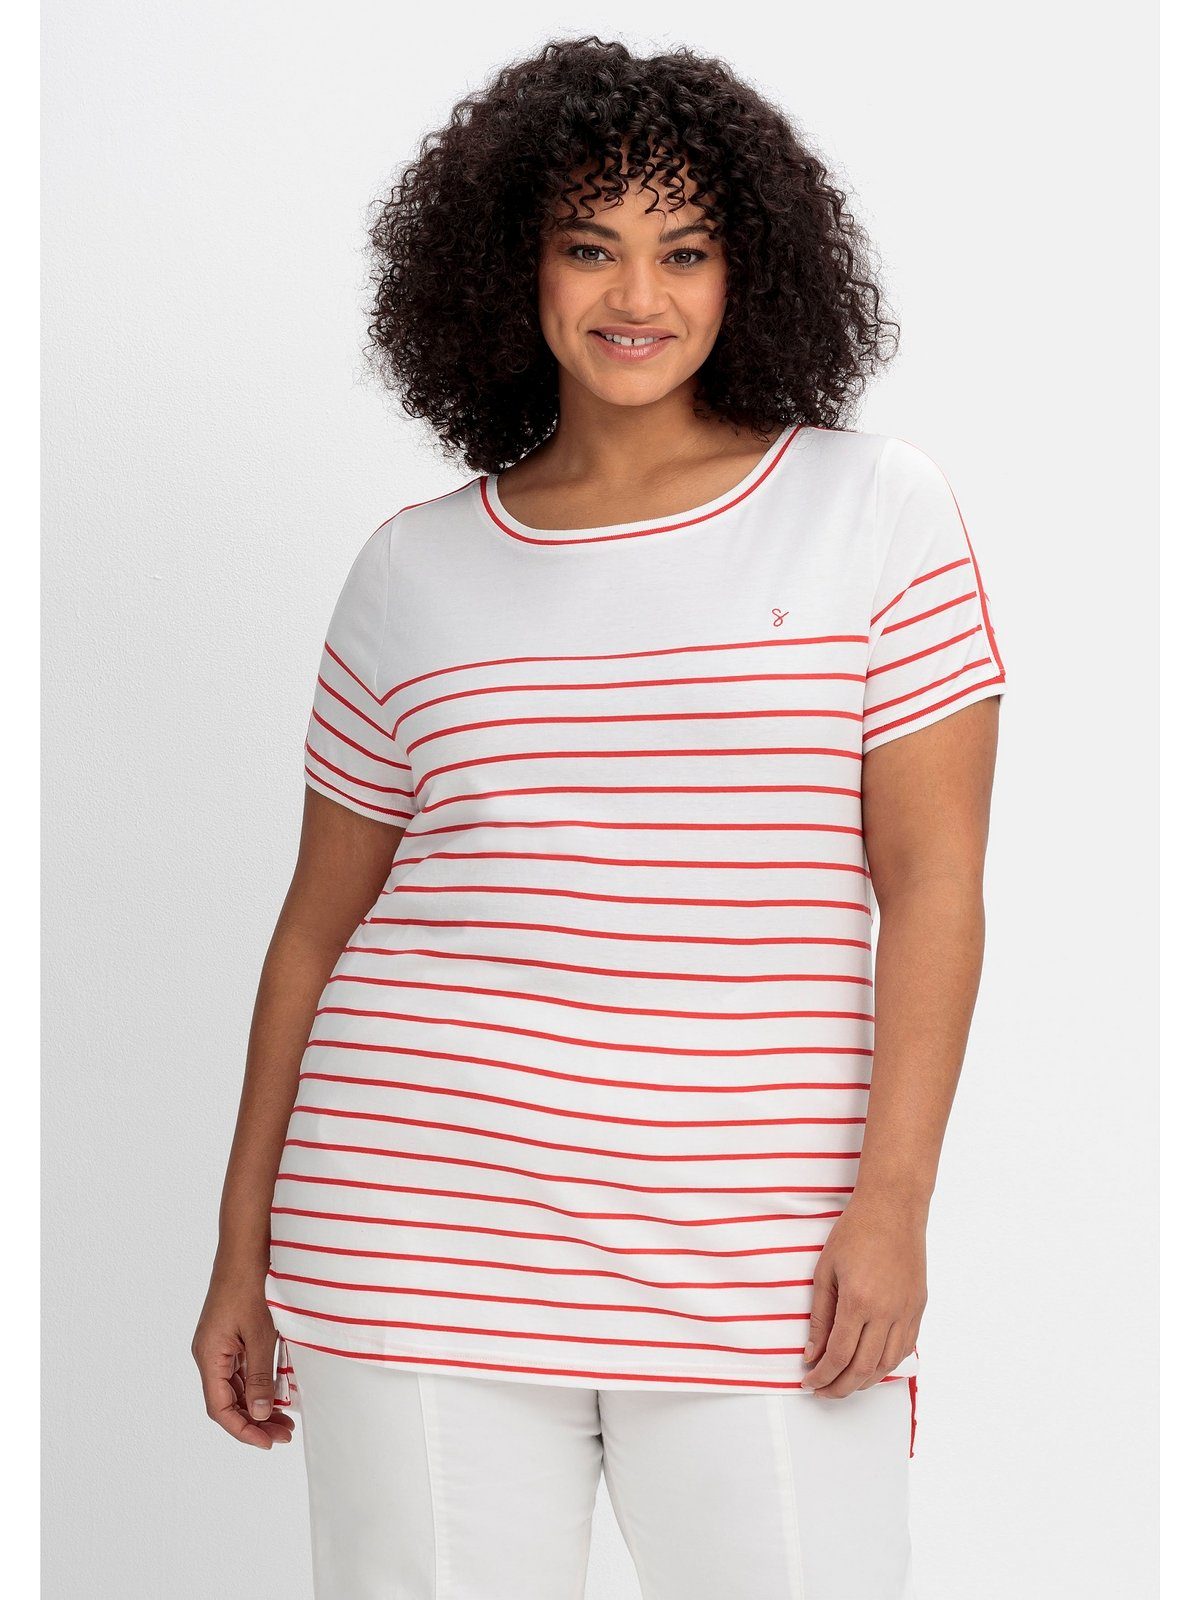 Sheego T-Shirt Große Größen mit Zierband auf der Schulter